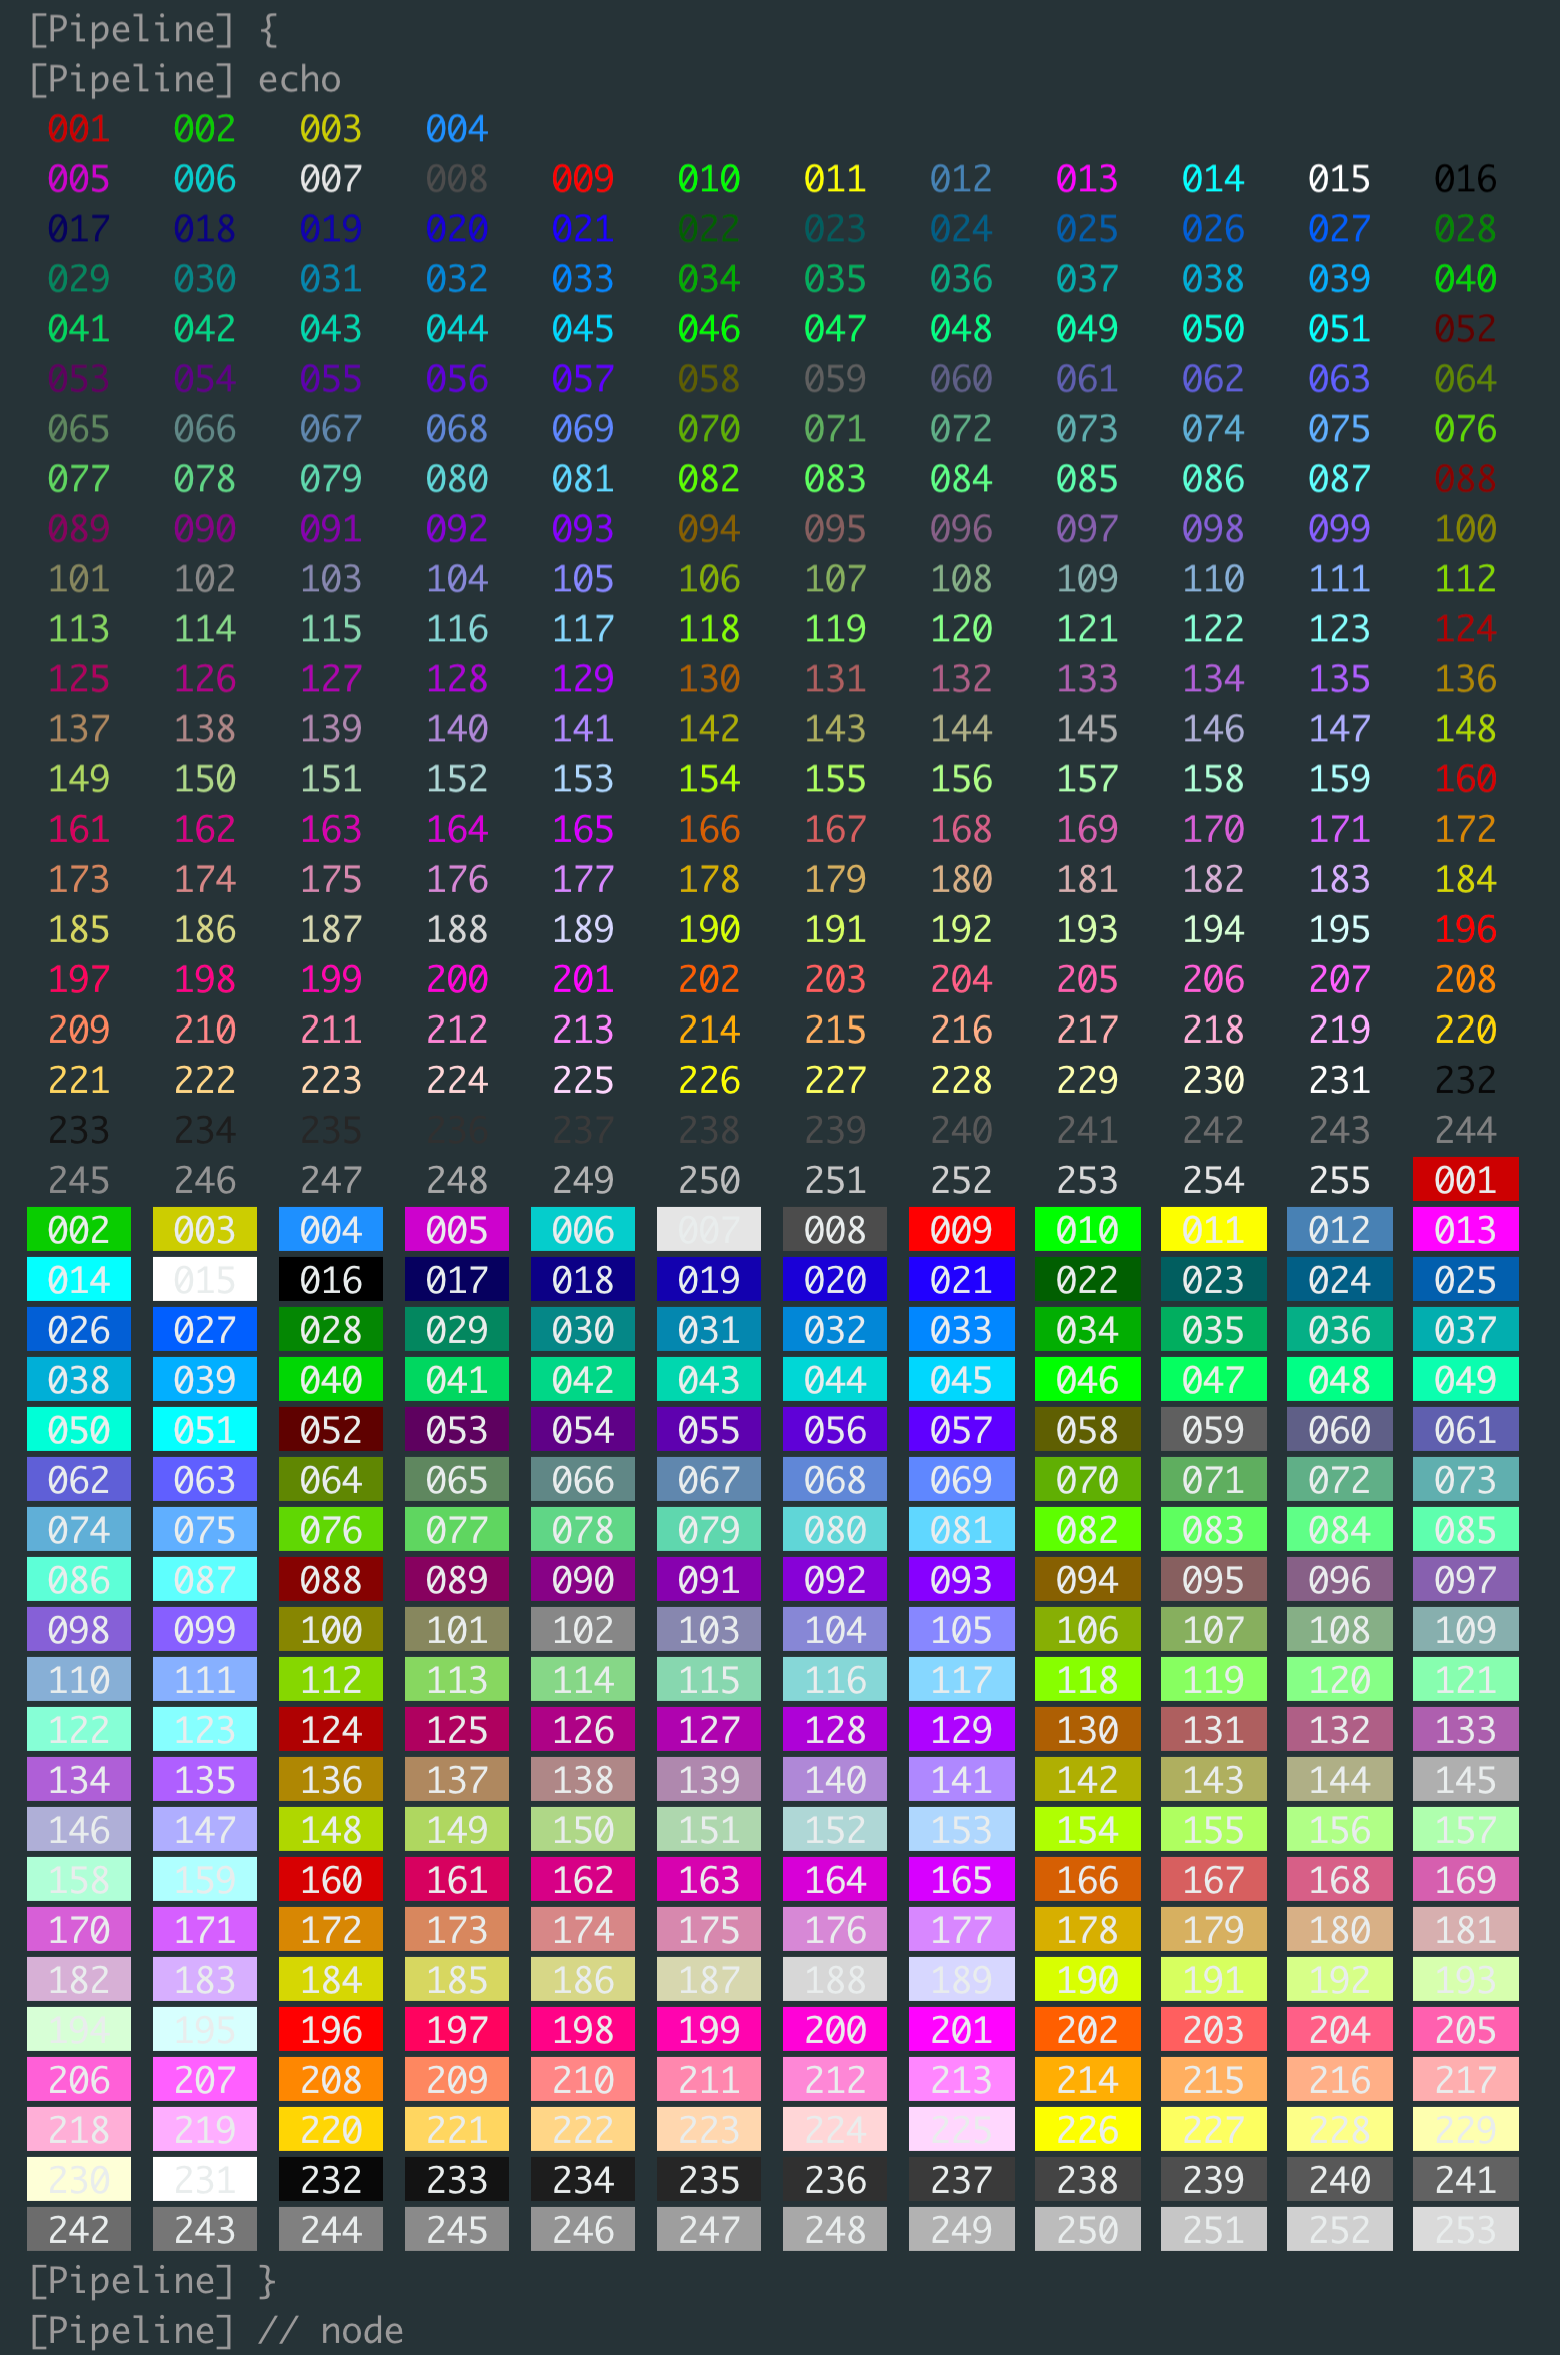 ansicolor 256 colors